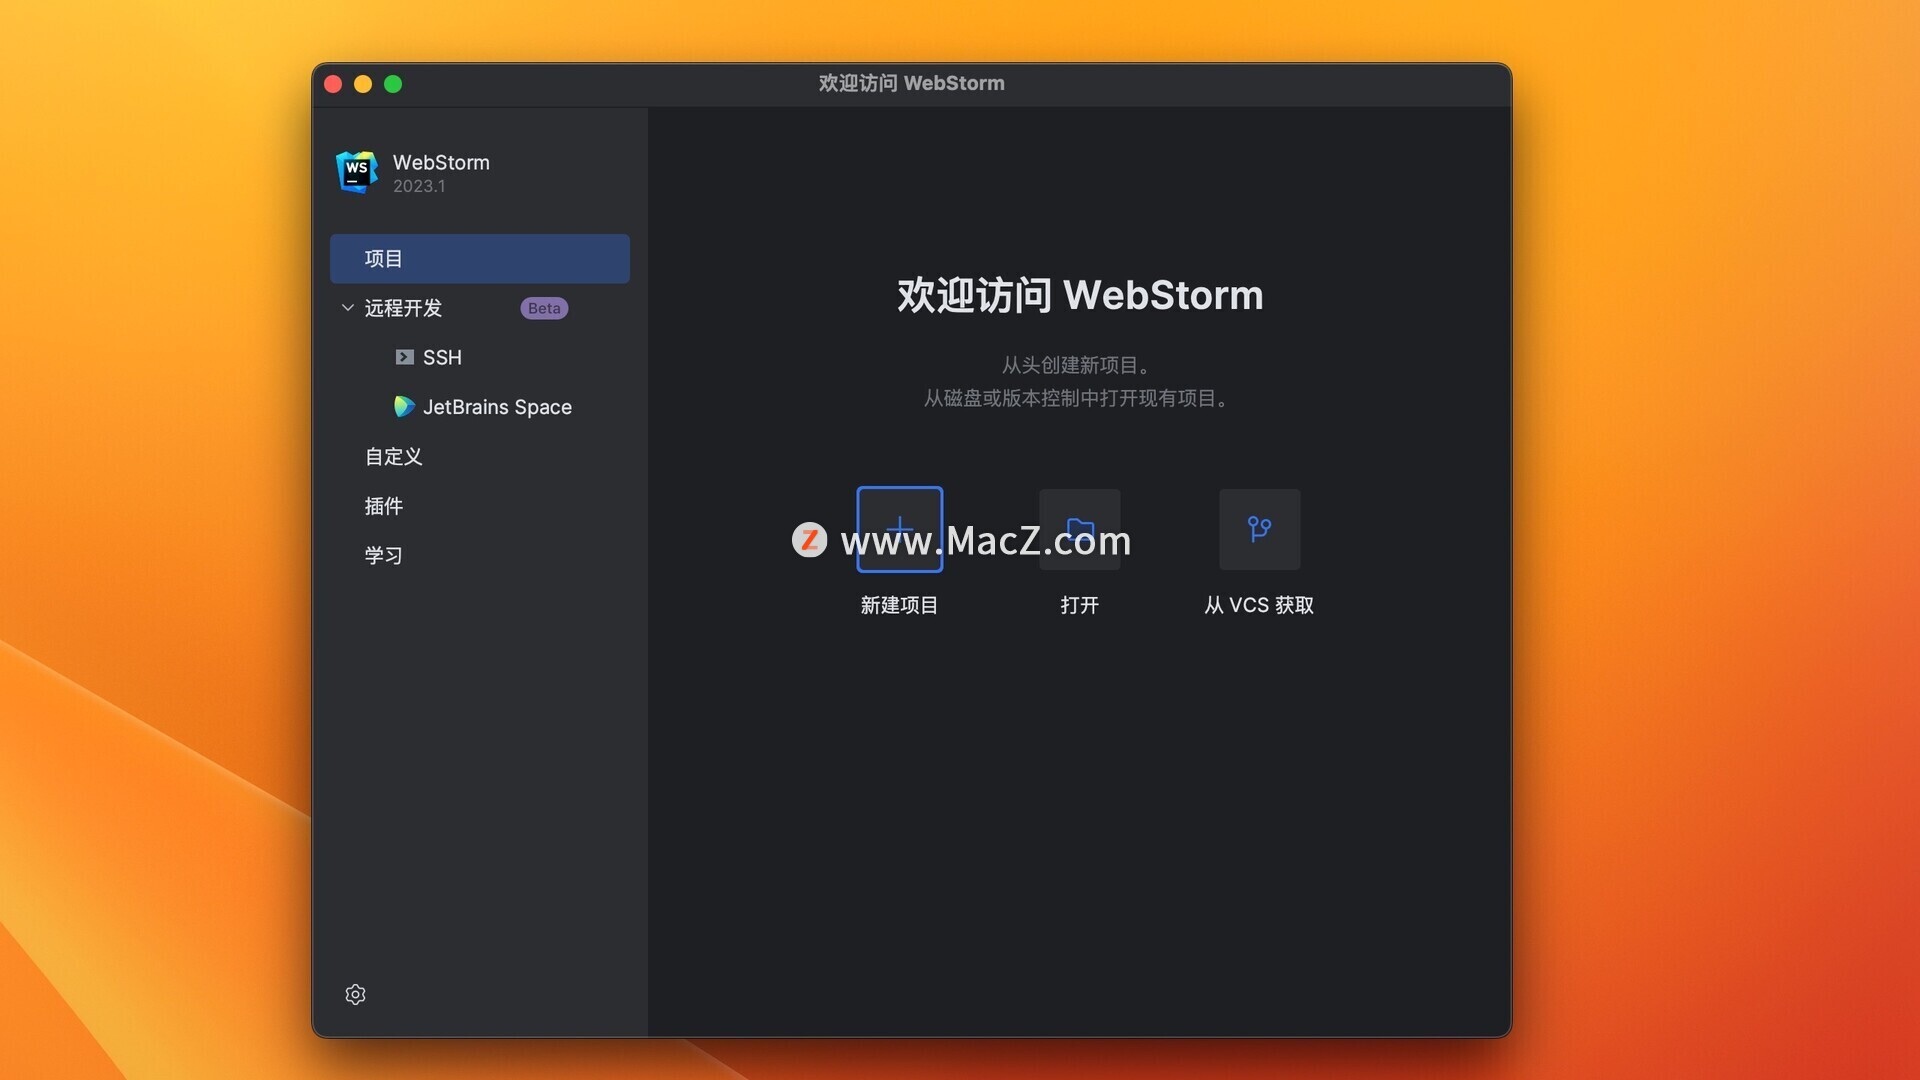 WebStorm激活2024.1.3(WebStorm 2024 for Mac(JavaScript开发工具) v2024.1.3中文激活版)